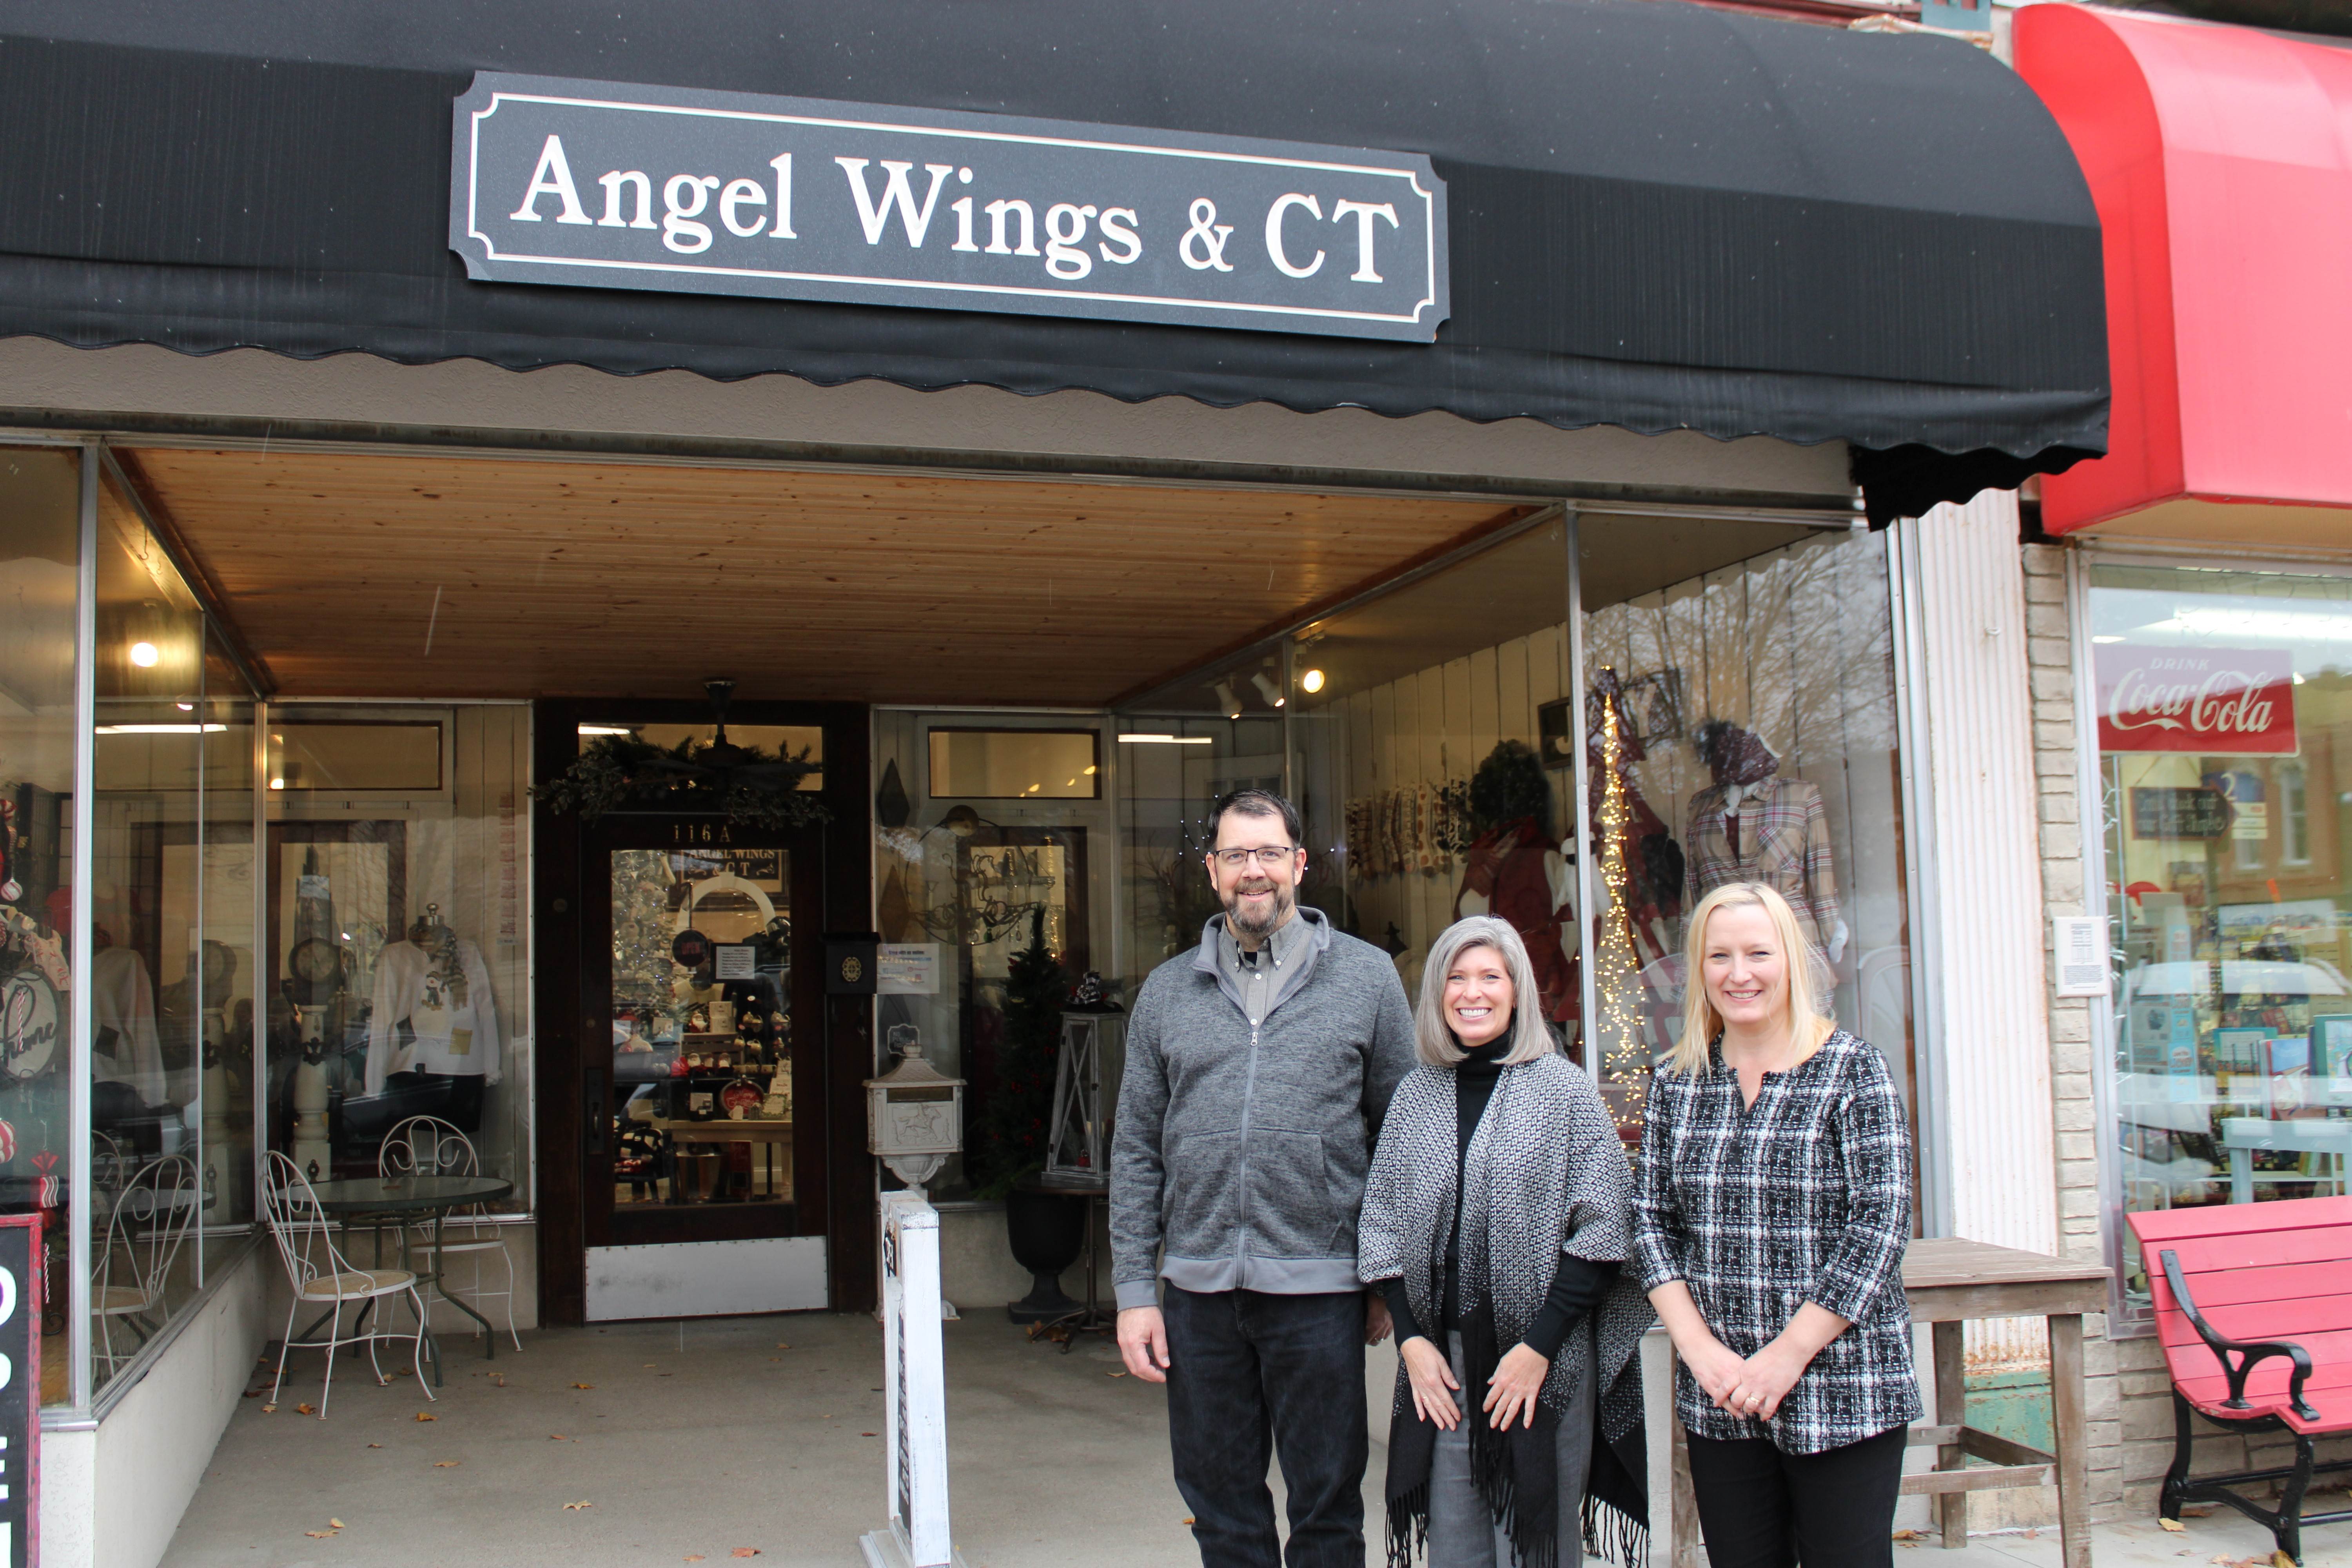 Angel Wings & CT